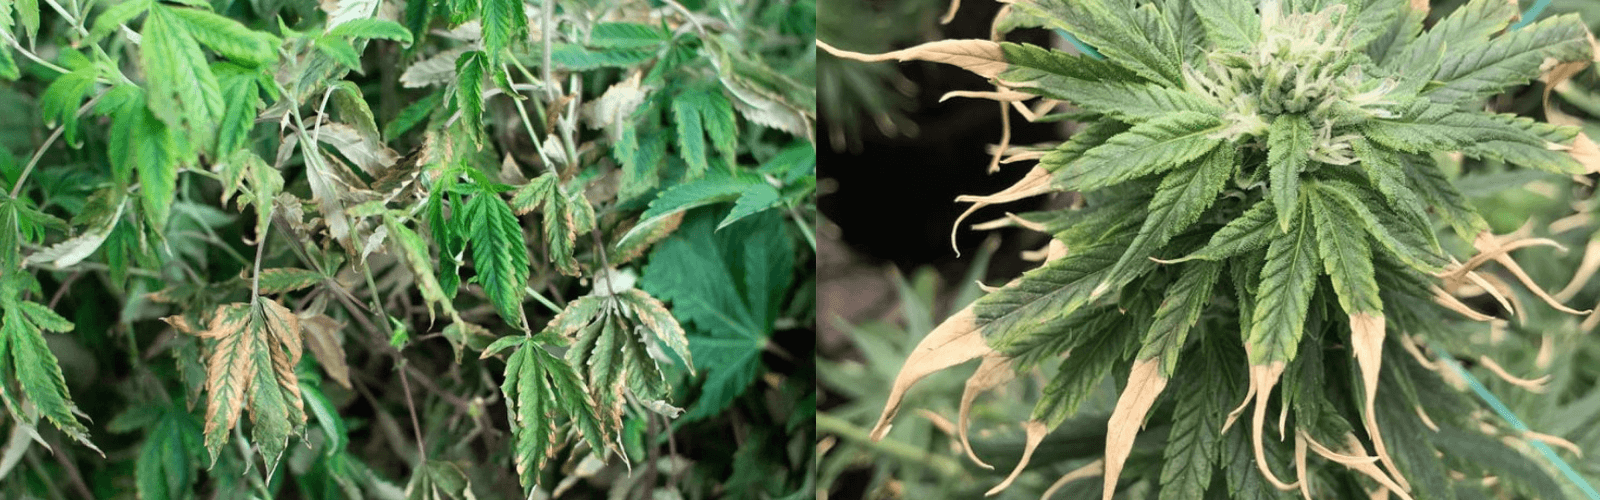 over feeding cannabis plant -